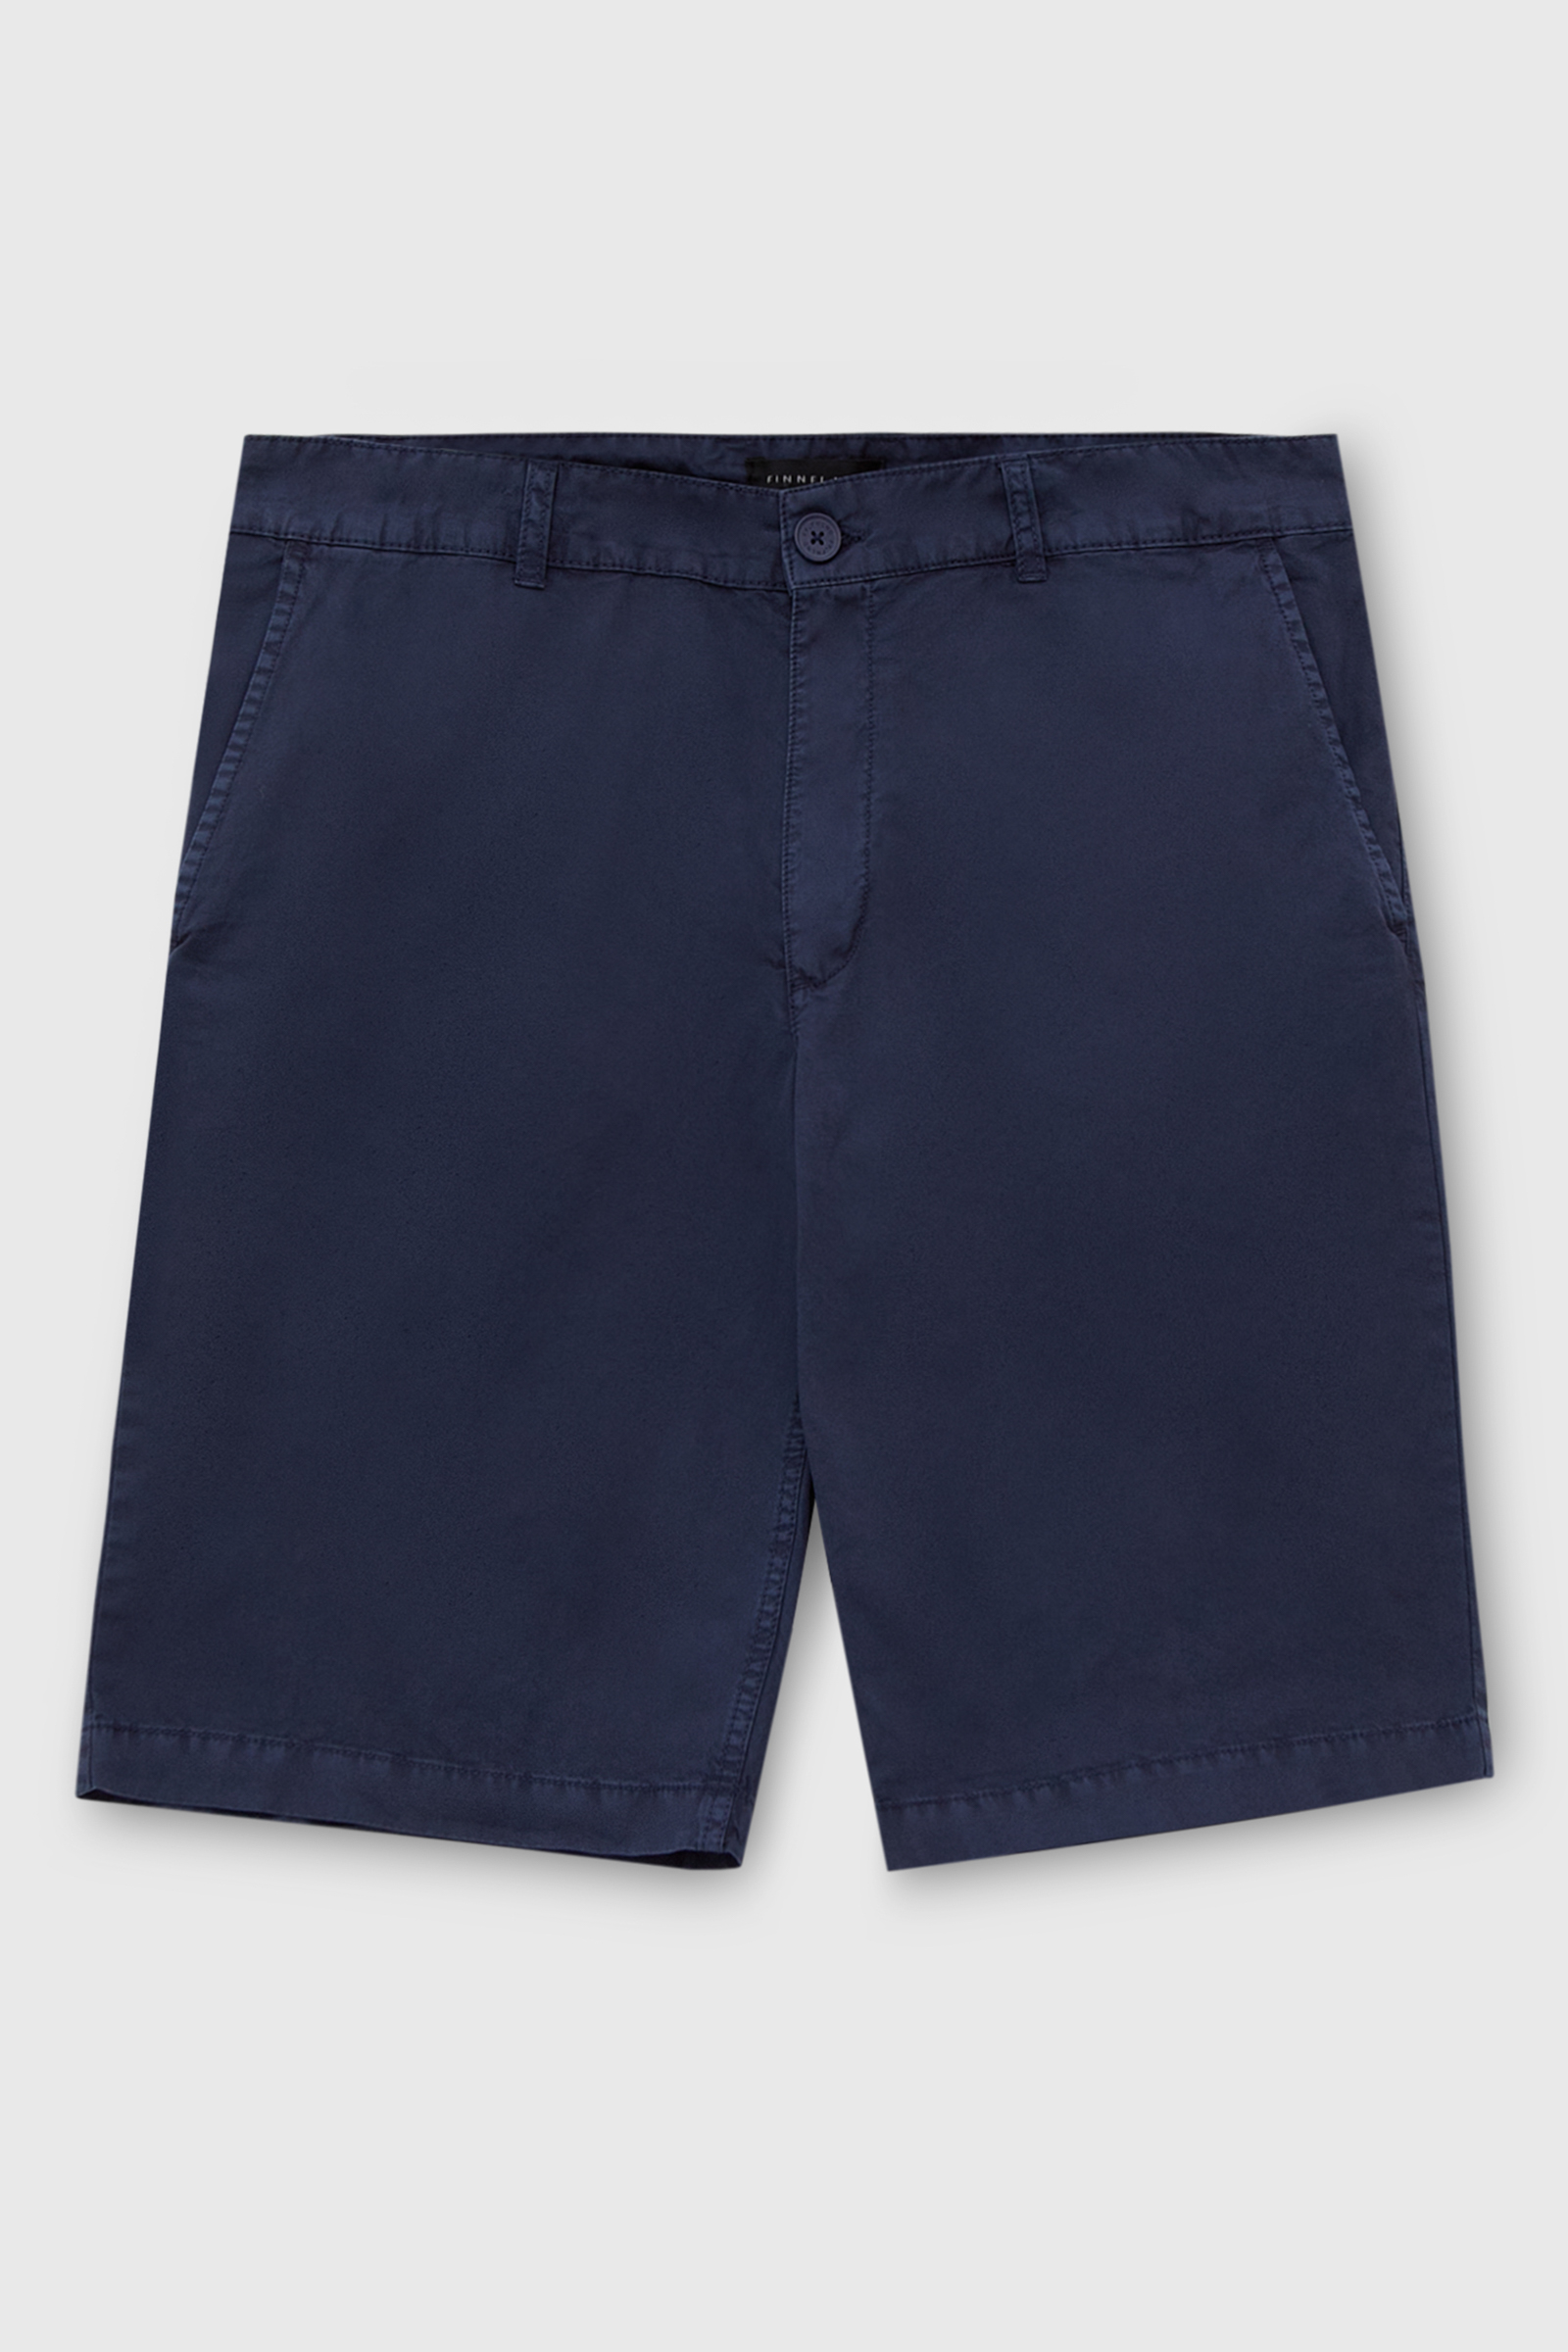 Повседневные шорты мужские Finn Flare FSC21005 синие 2XL